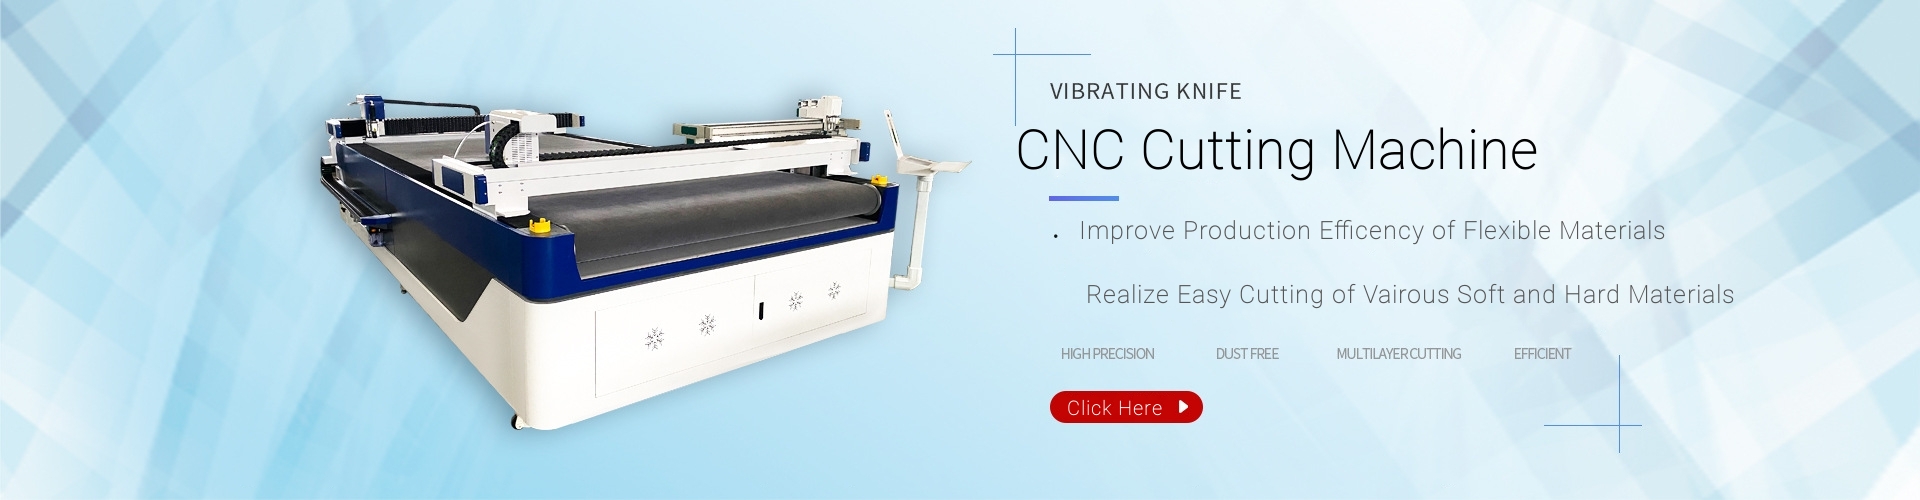 Maszyna do cięcia nożem CNC